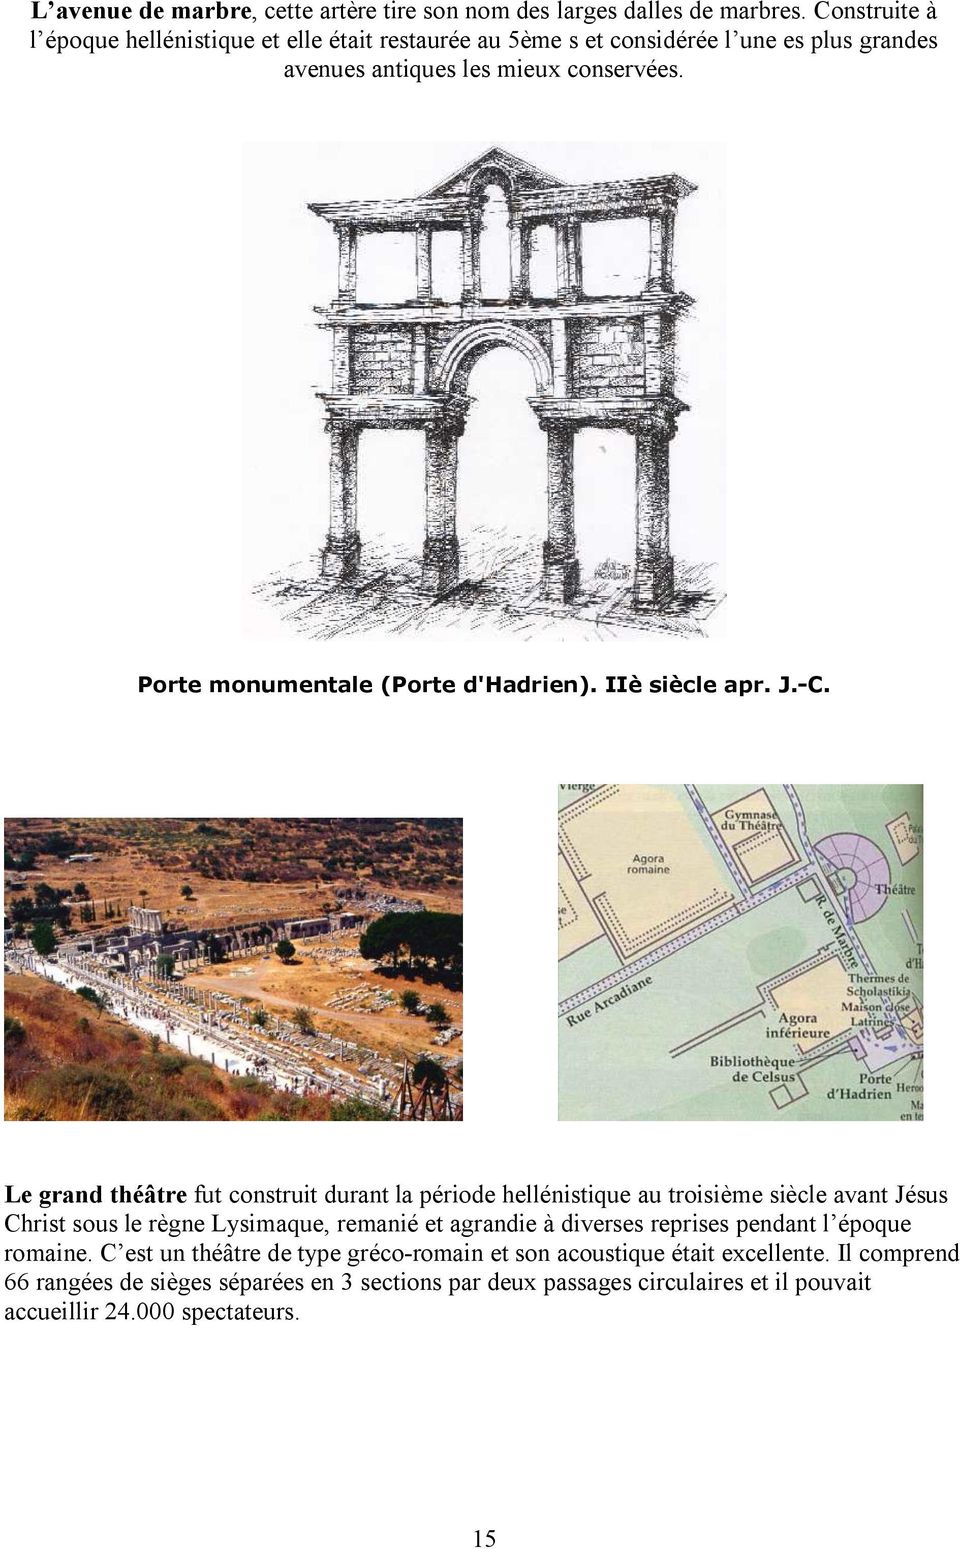 Porte monumentale (Porte d'hadrien). IIè siècle apr. J.-C.